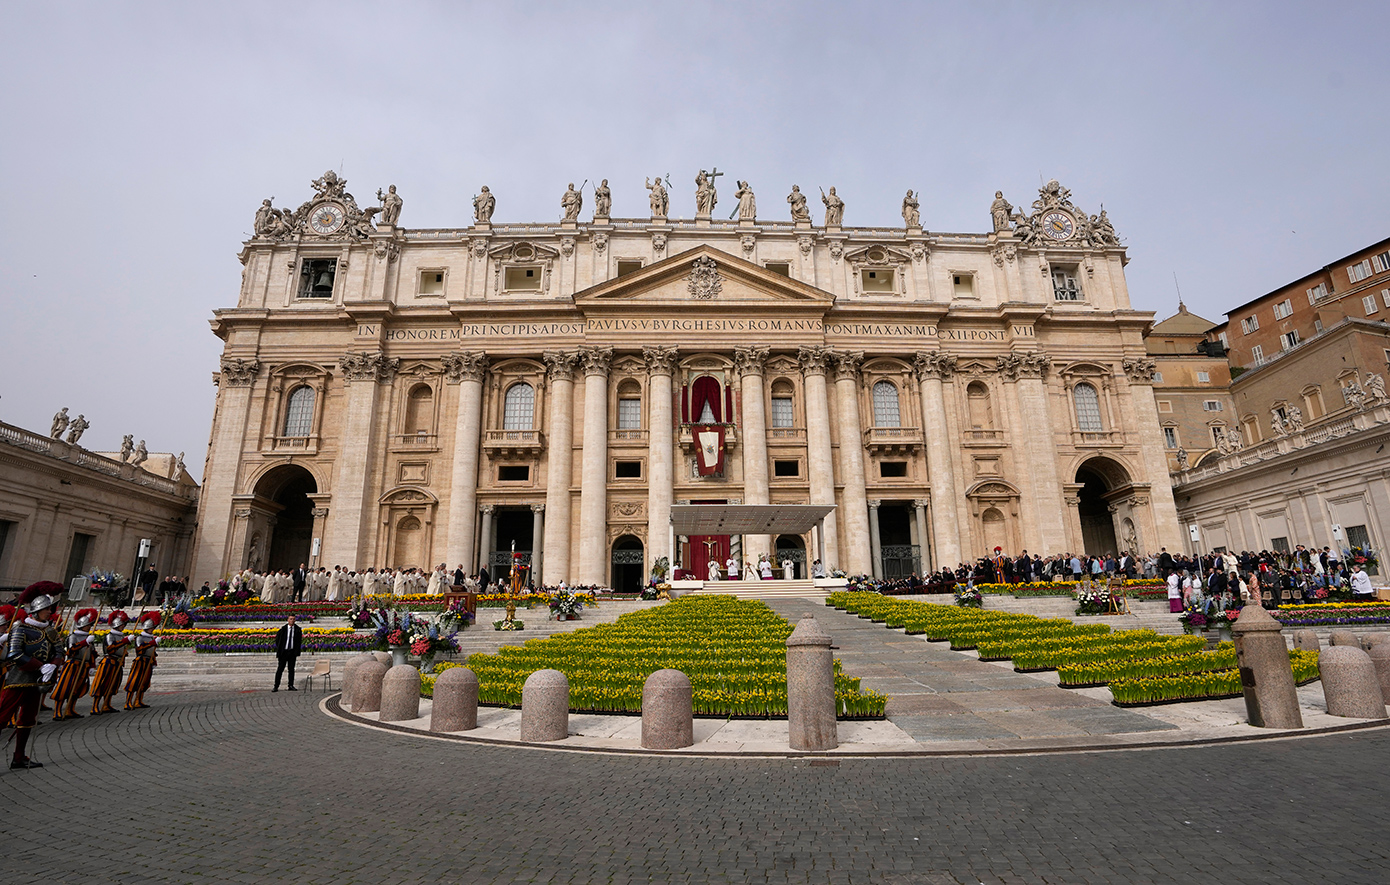 Εργαζόμενοι των Μουσείων του Βατικανού καταγγέλλουν προβληματικές συνθήκες εργασίας και ζητούν άμεση βελτίωσή τους